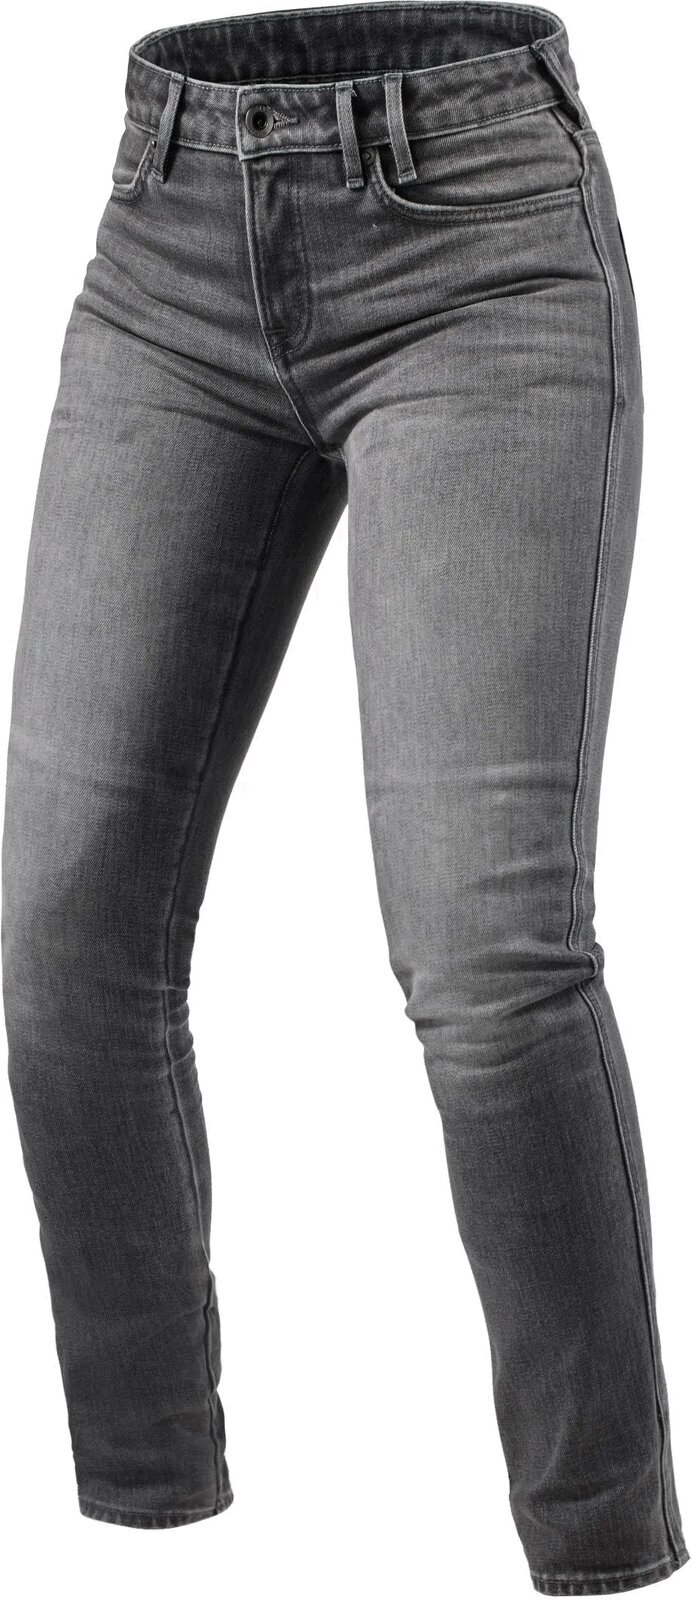 Motoristične jeans hlače Rev'it! Jeans Shelby 2 Ladies SK Medium Grey Stone 32/32 Motoristične jeans hlače